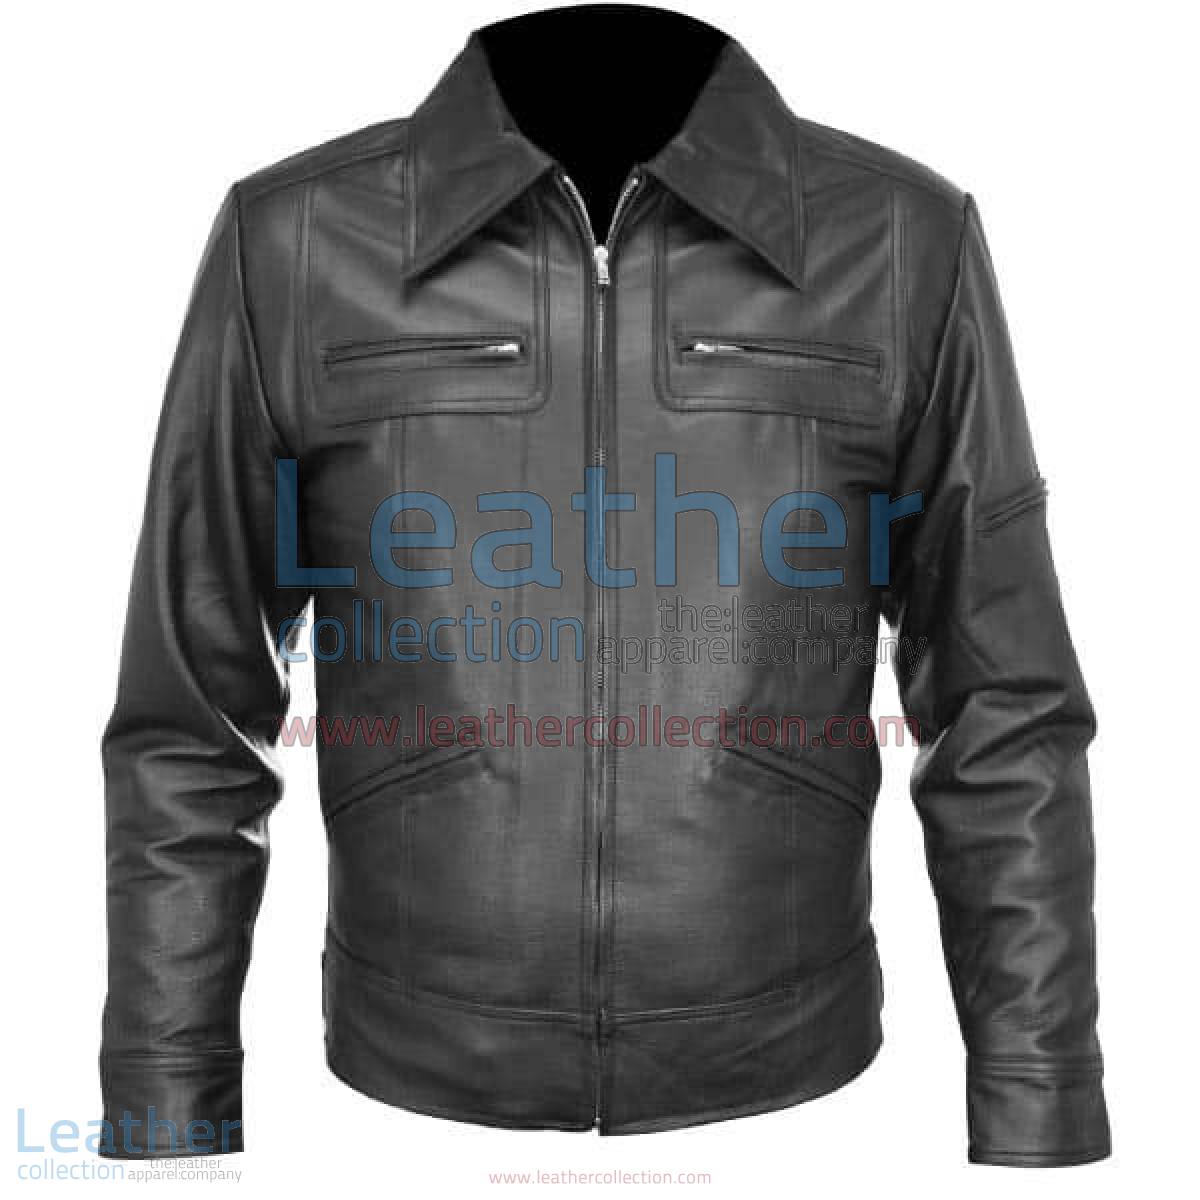 Classic Shirt Style Leather Jacket | shirt style jacket,shirt style leather jacket